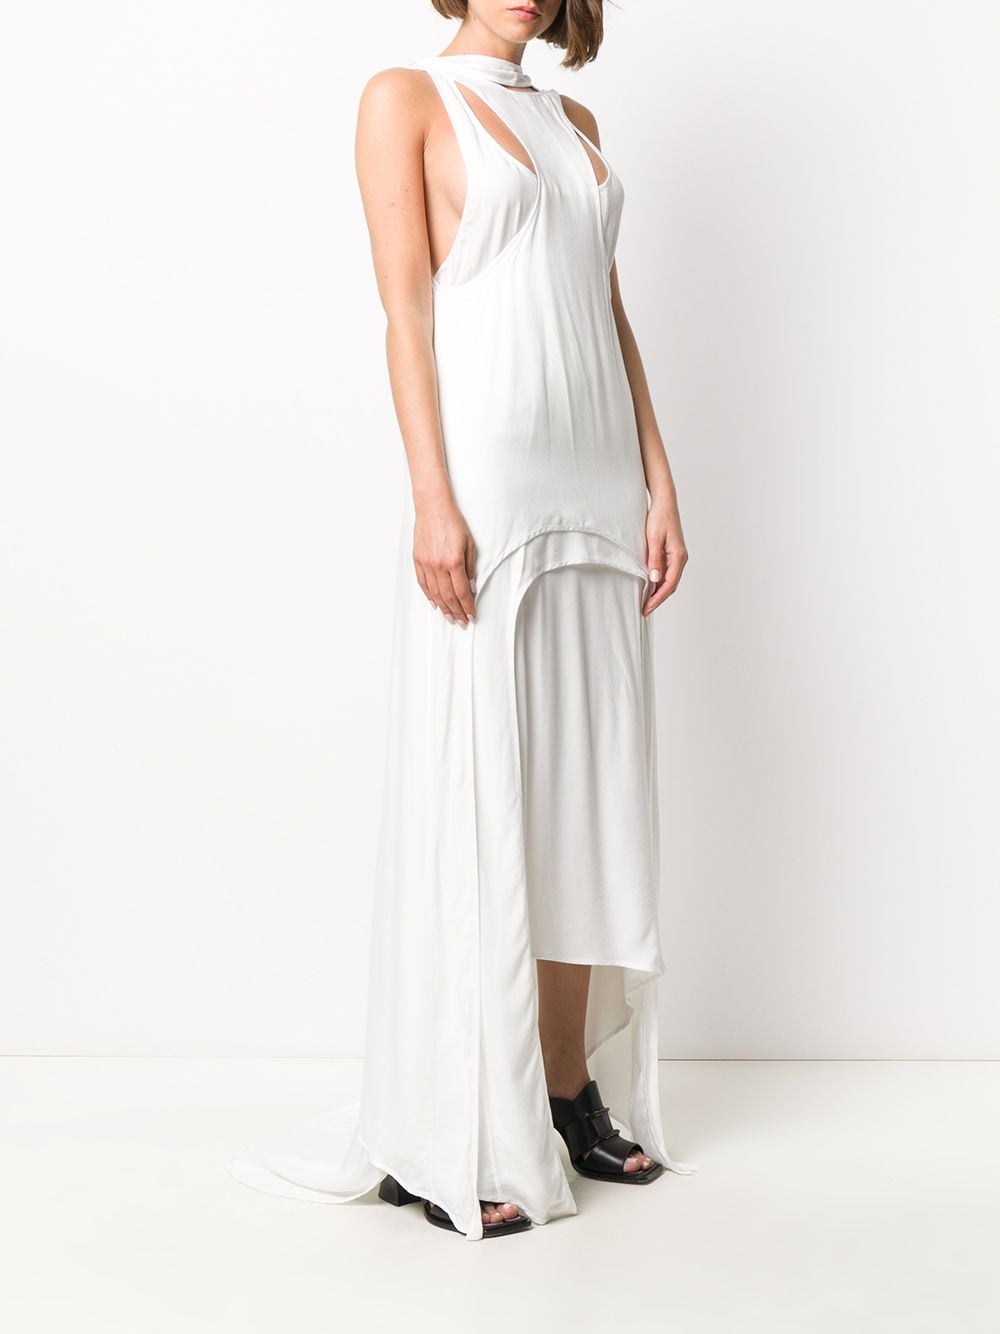 Ann Demeulemeester Reconstructed Layered Dress - Farfetch